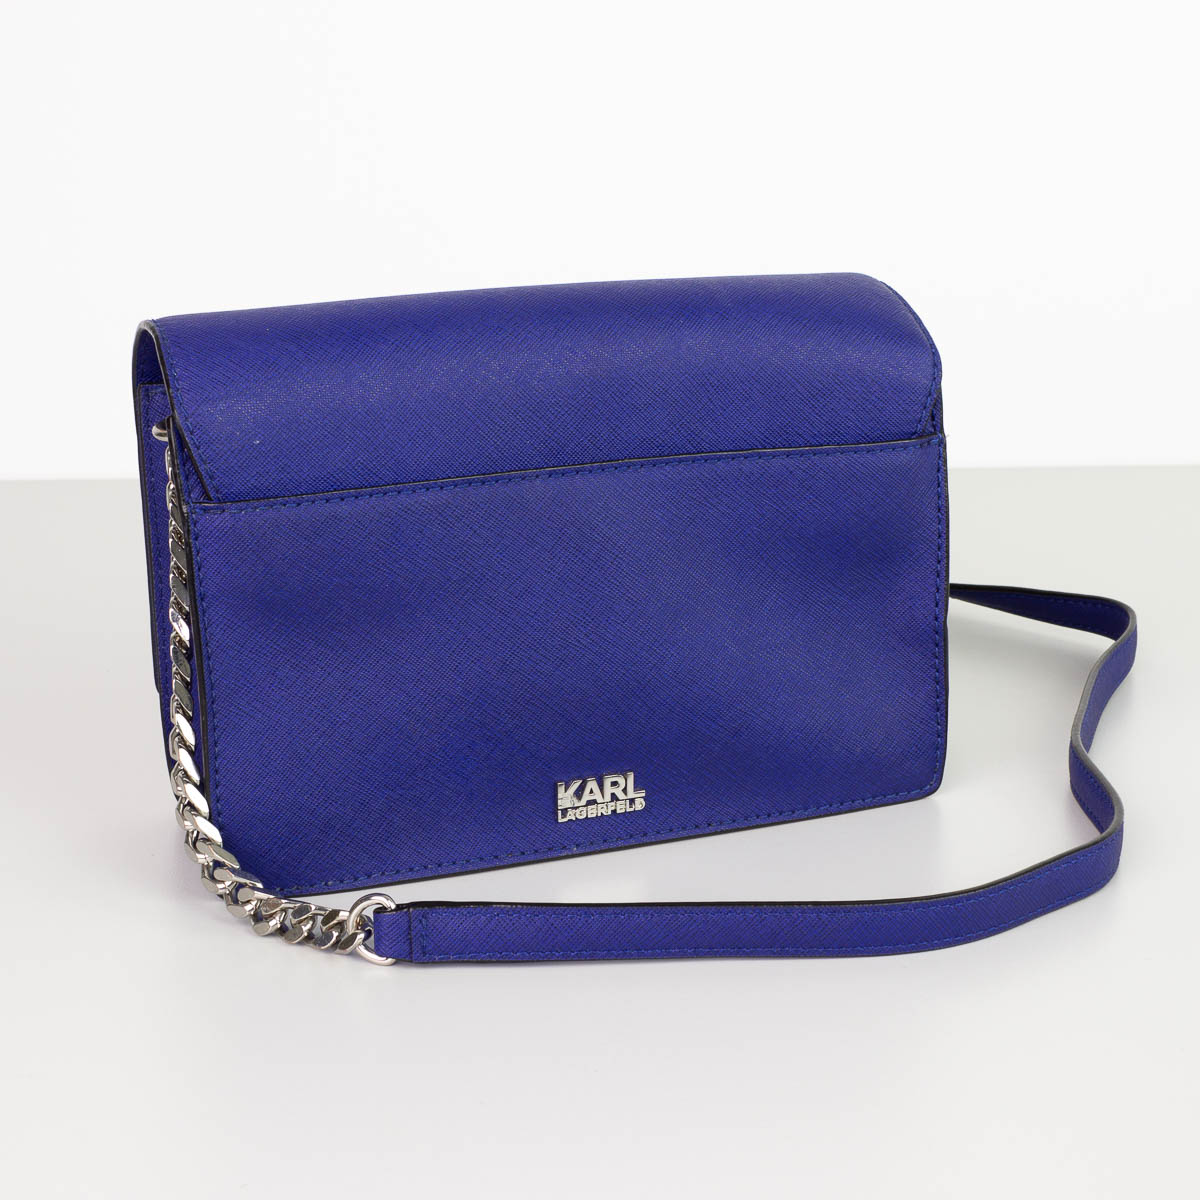 1 Handtasche Karl Lagerfeld, blau, Höhe: 15cm